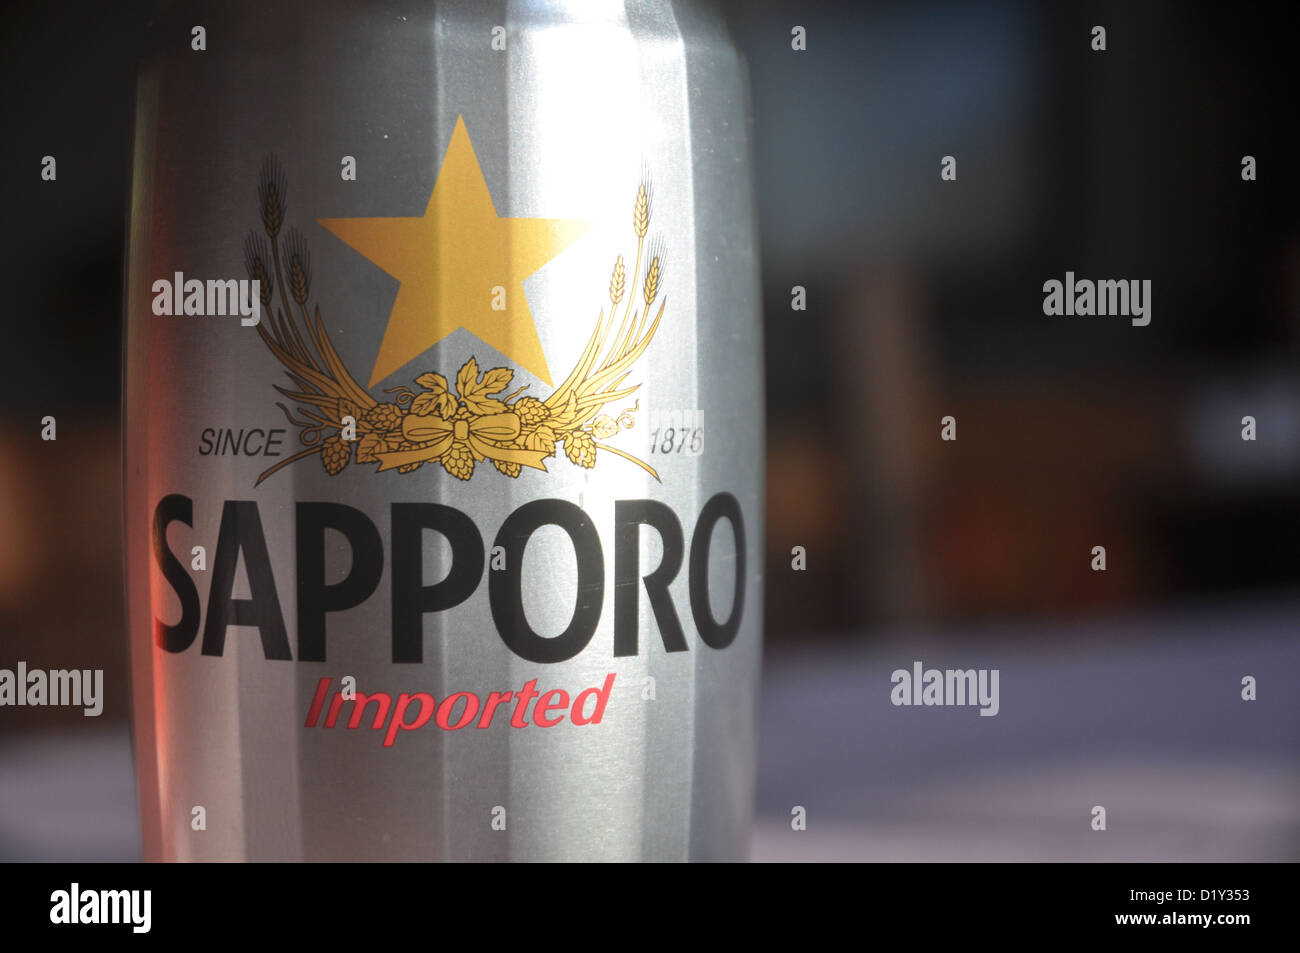 Japanisches Bier Sapporo Stockfoto